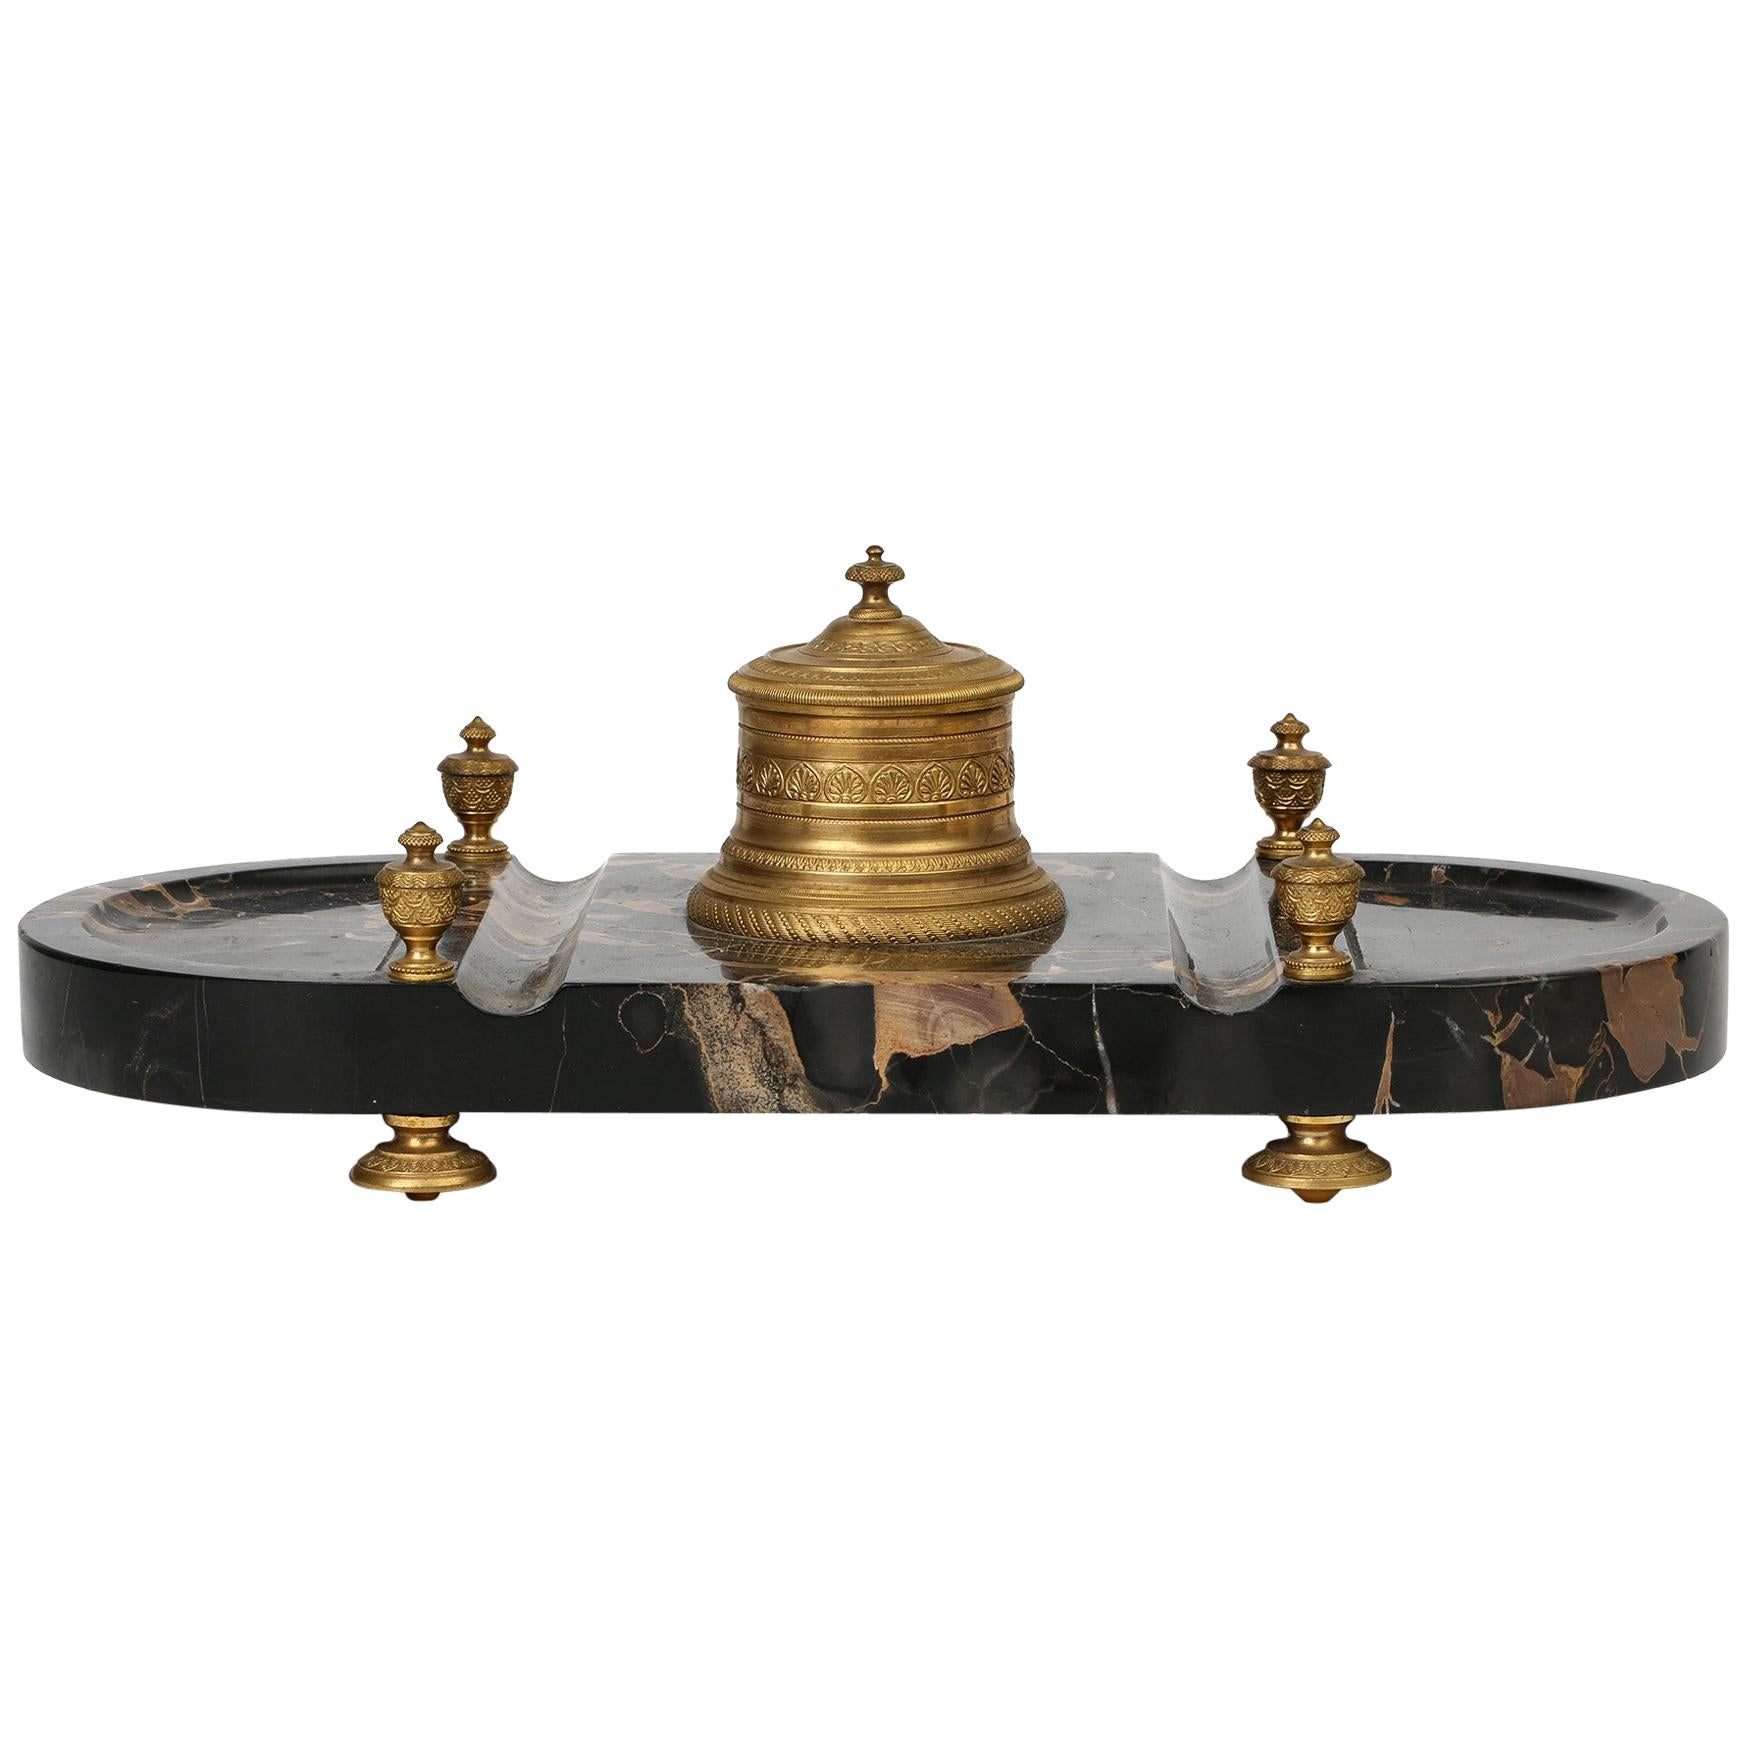 Support de bureau en marbre de style Empire français monté en bronze doré